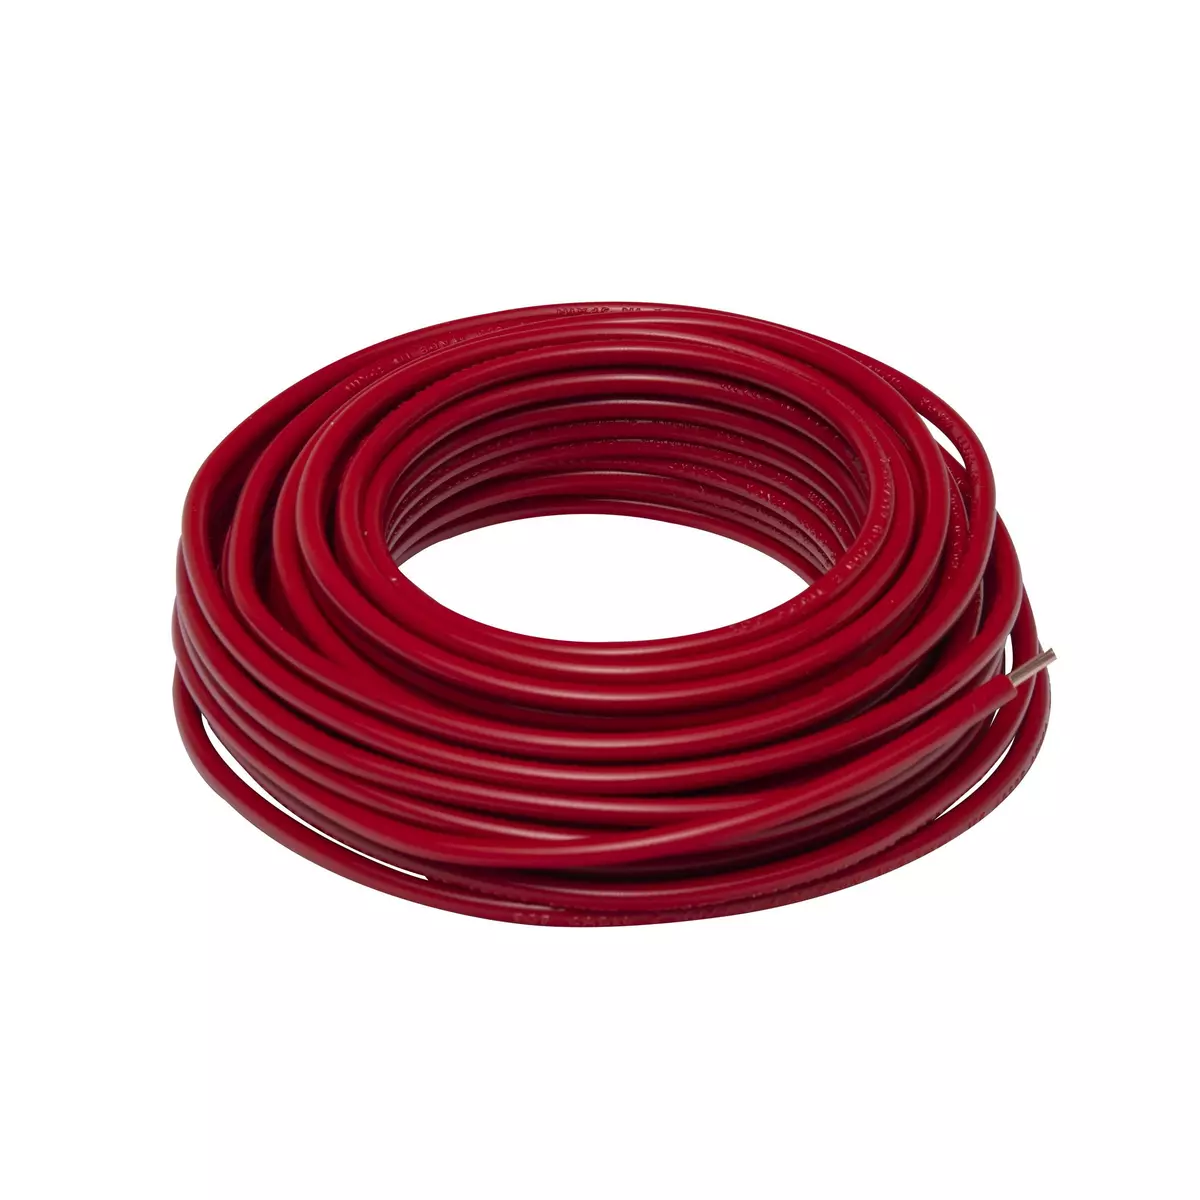 ZENITECH Câble électrique HO7V-U 2,5mm2 rouge 10m